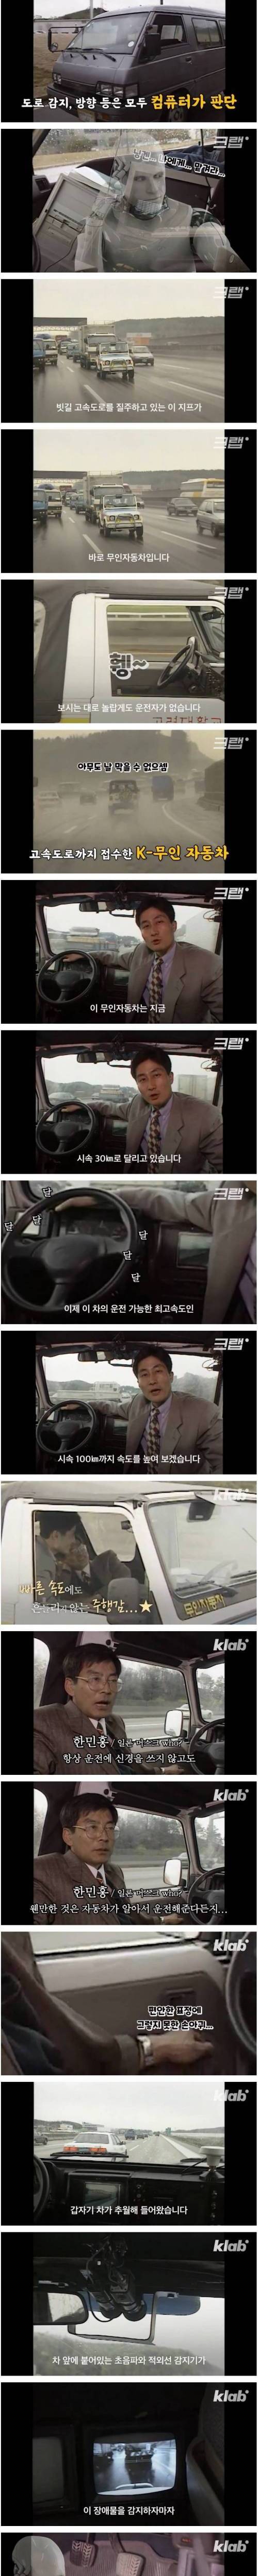 [스압] 테슬라보다 무려 30년이나 빨랐던 한국의 자율주행 자동차